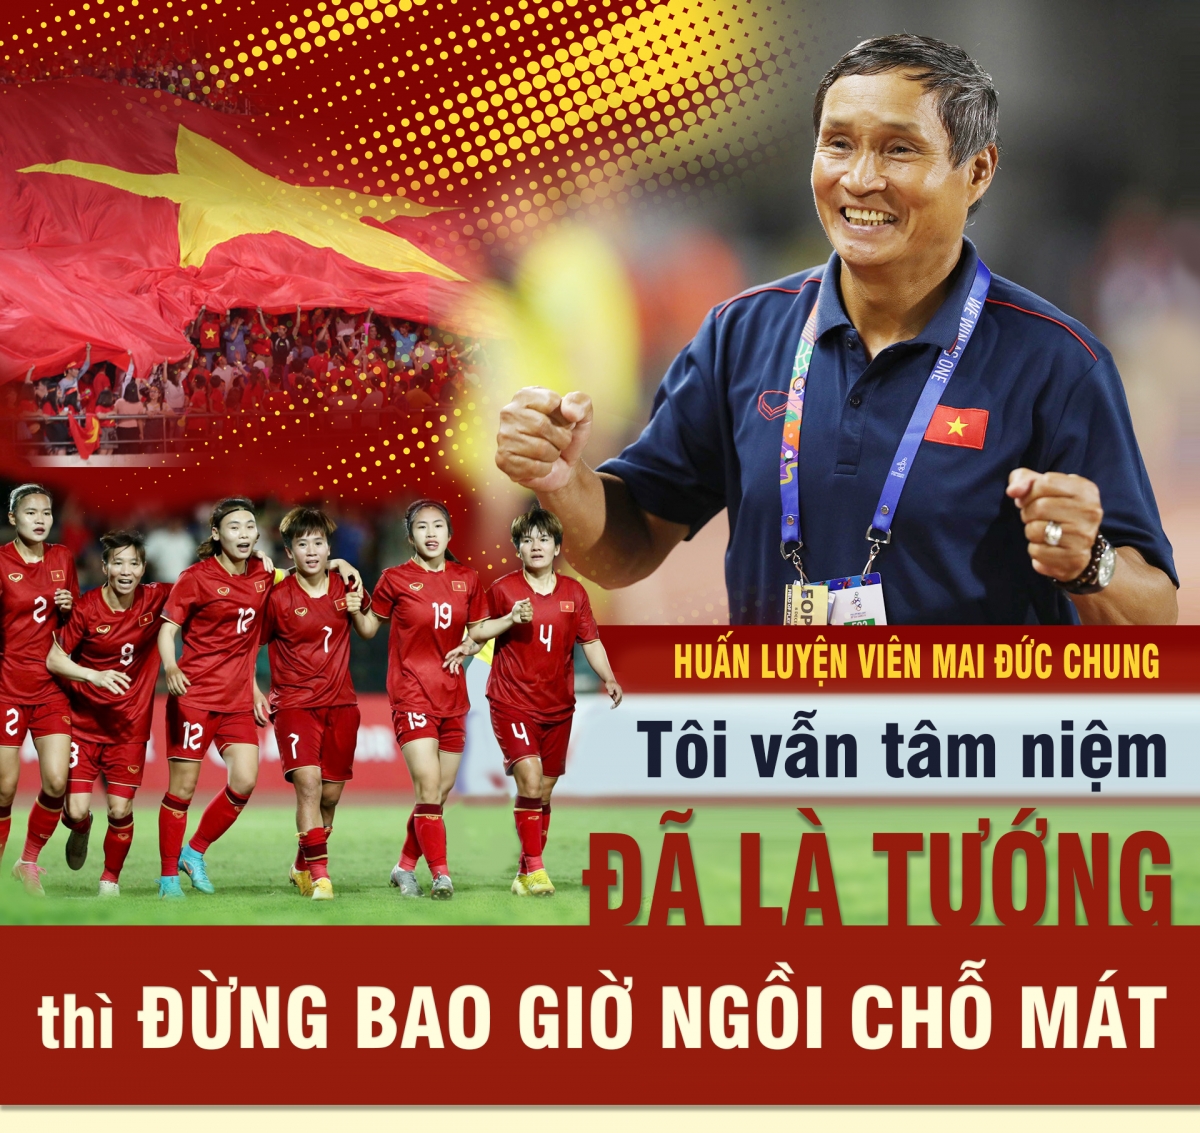 Mai Đức Chung - Nhà cầm quân nhiệt huyết của bóng đá Việt Nam